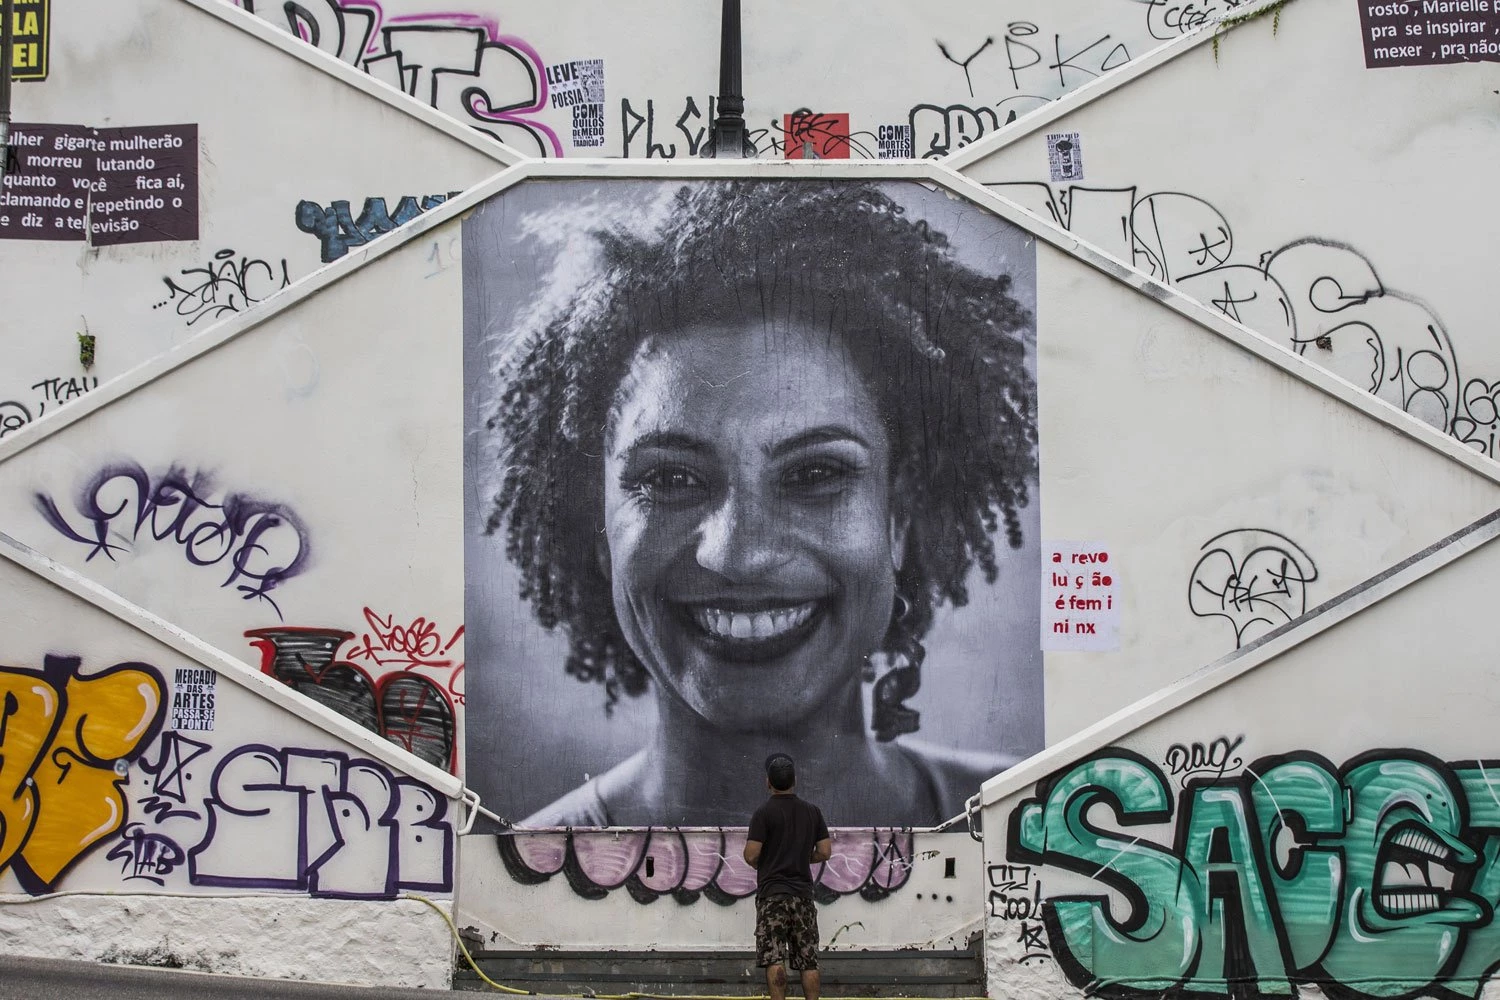 *ARQUIVO* SÃO PAULO, SP, 20.03.2018 - Lambe-lambe em homenagem a vereadora Marielle Franco (PSOL) em escadaria na rua Cristiano Viana, em Pinheiros, zona oeste de São Paulo. (Foto: Danilo Verpa/Folhapress)